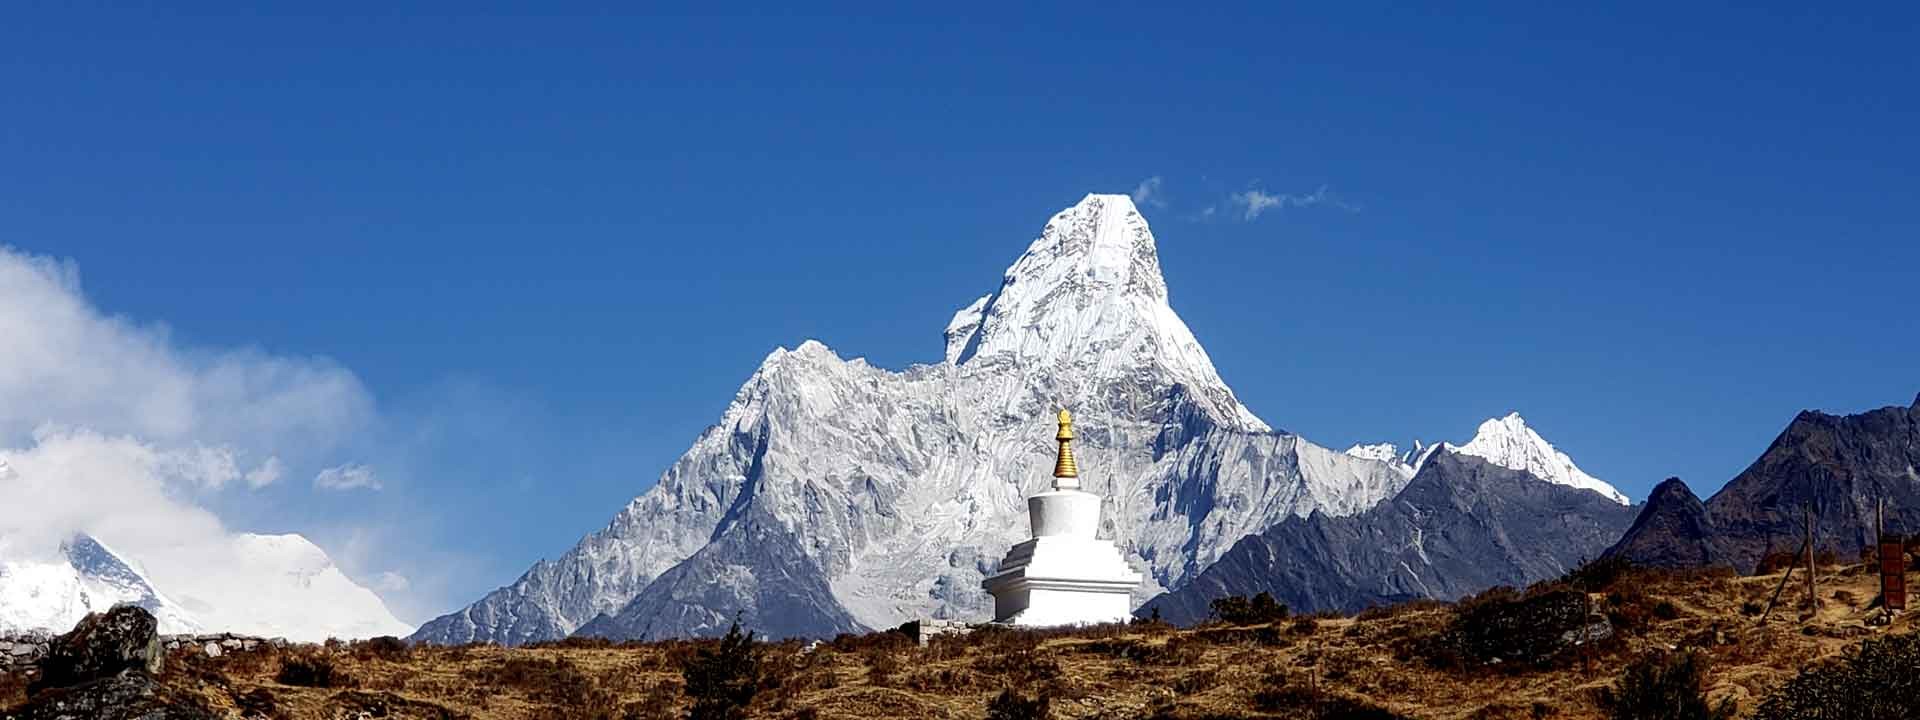 Everest region trekking